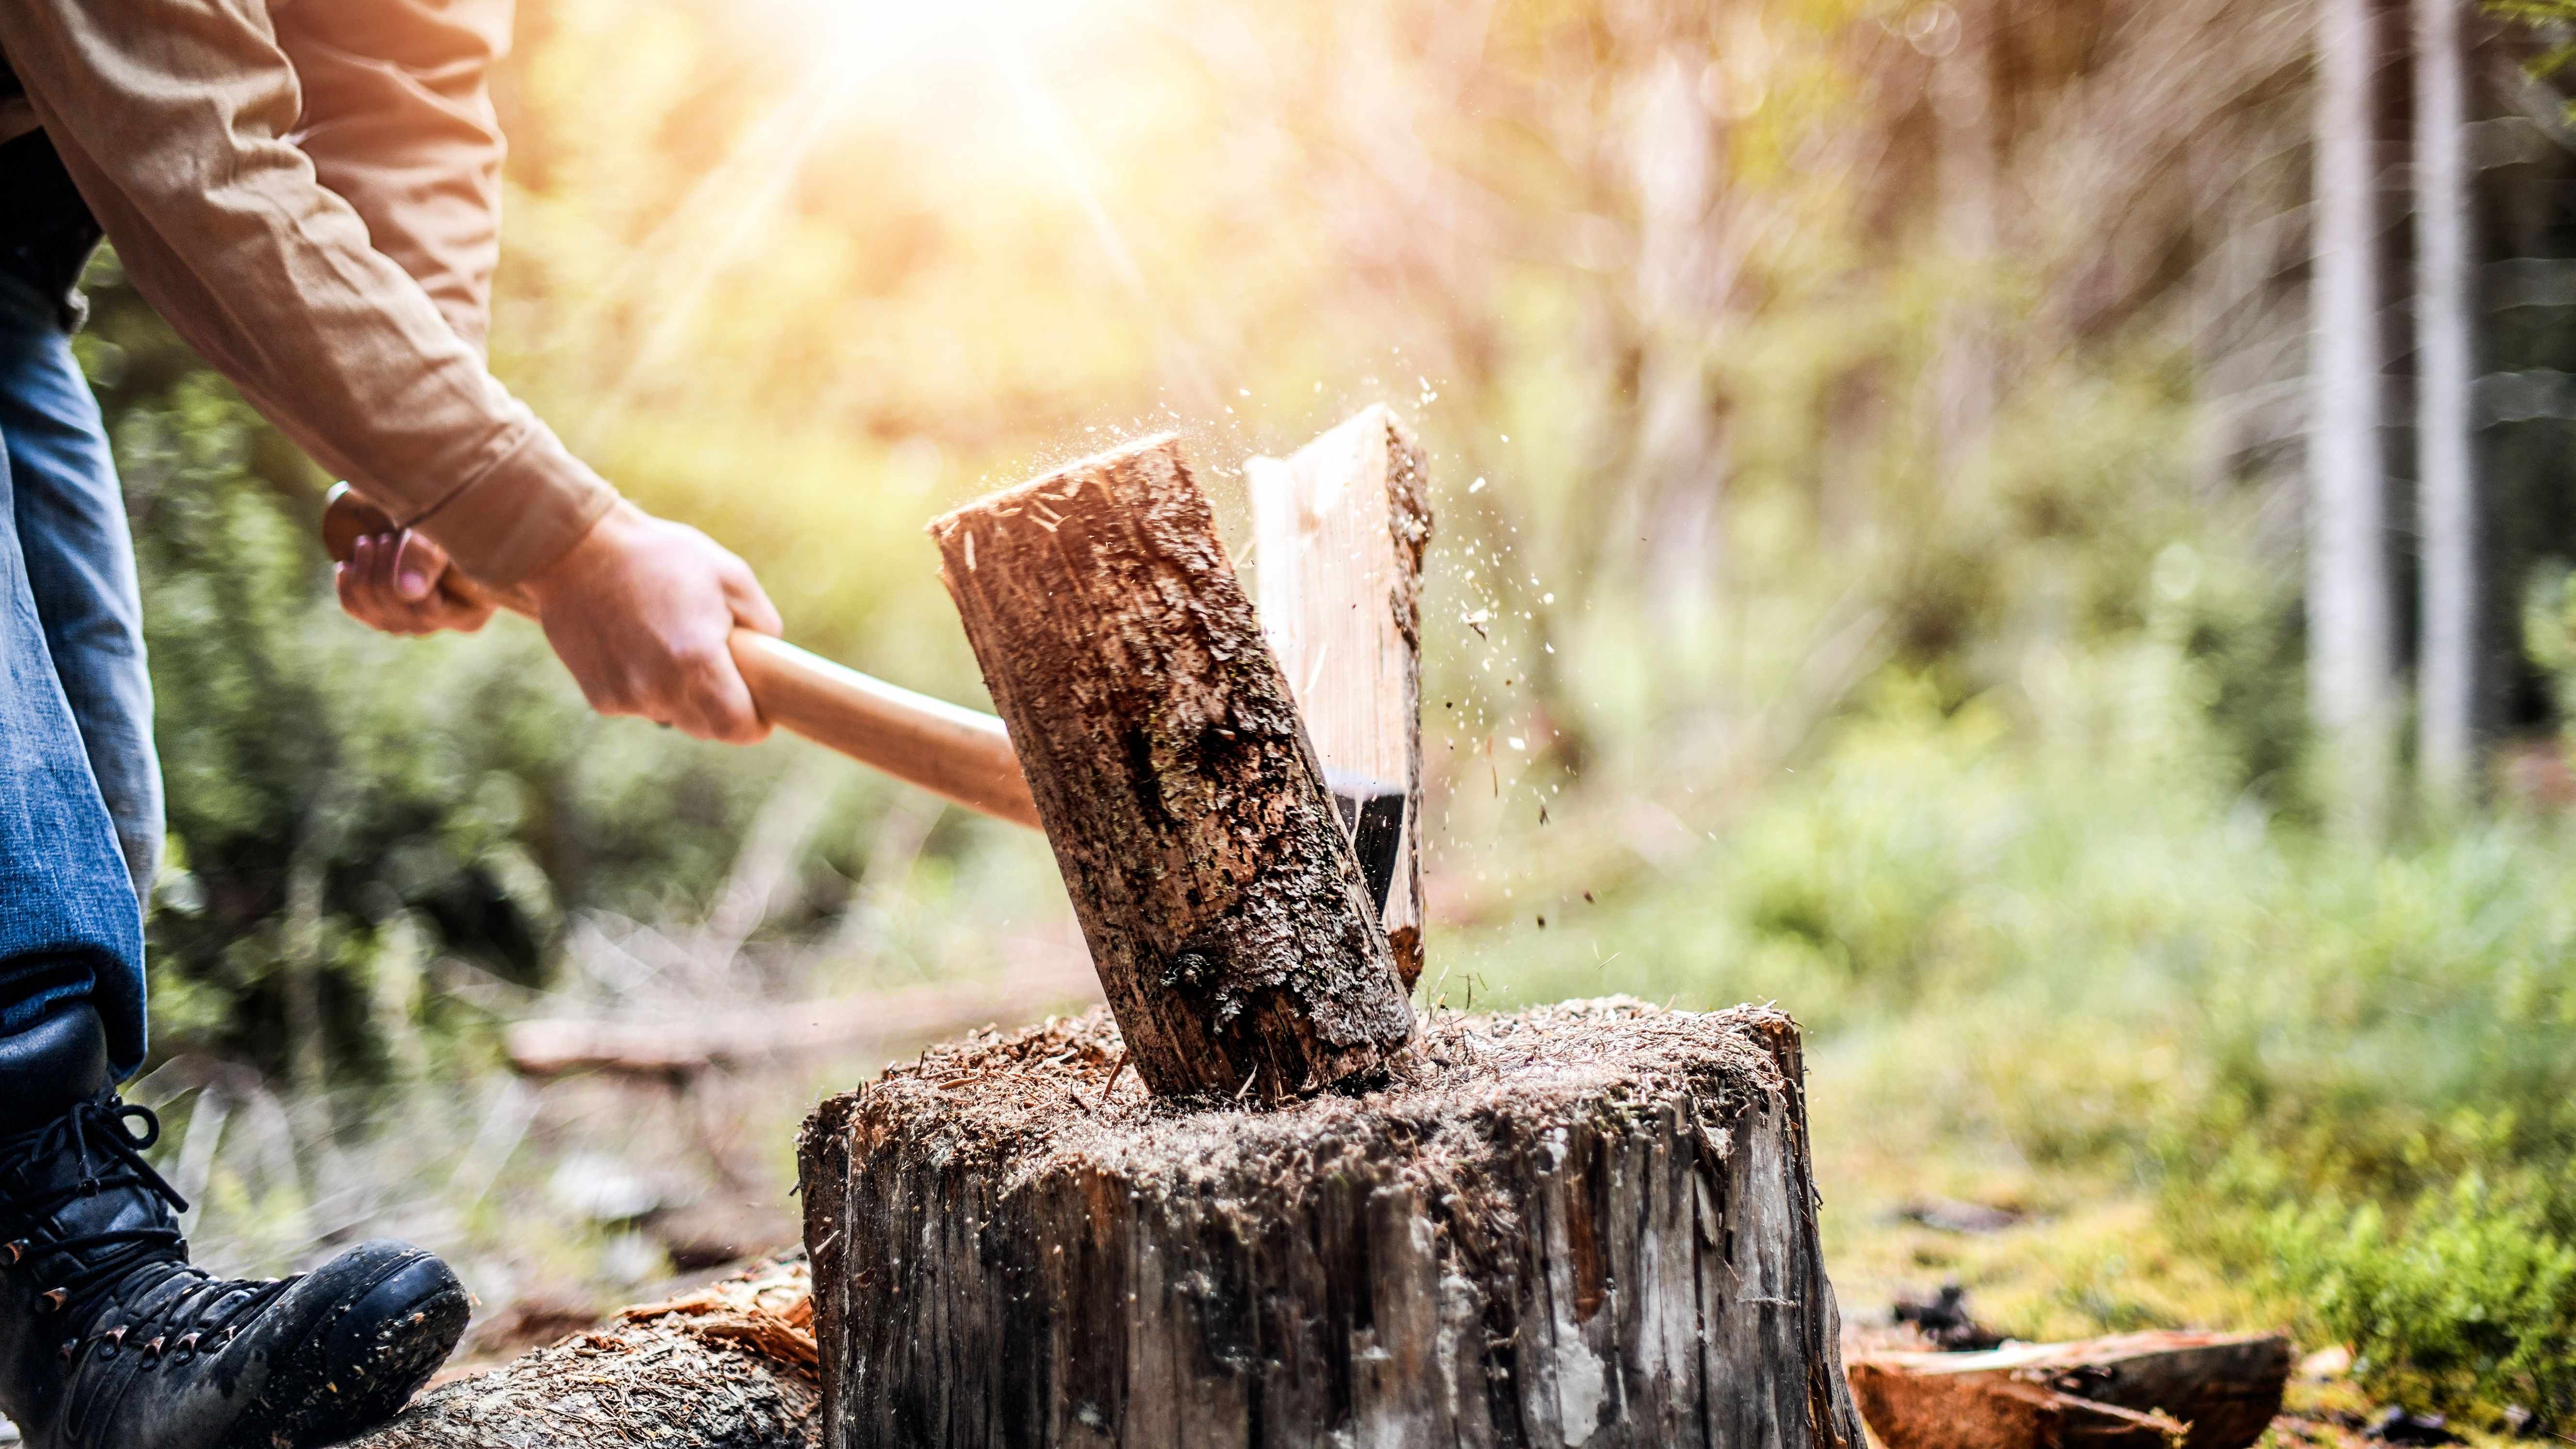 Comment choisir ses outils à main pour scier et débiter du bois